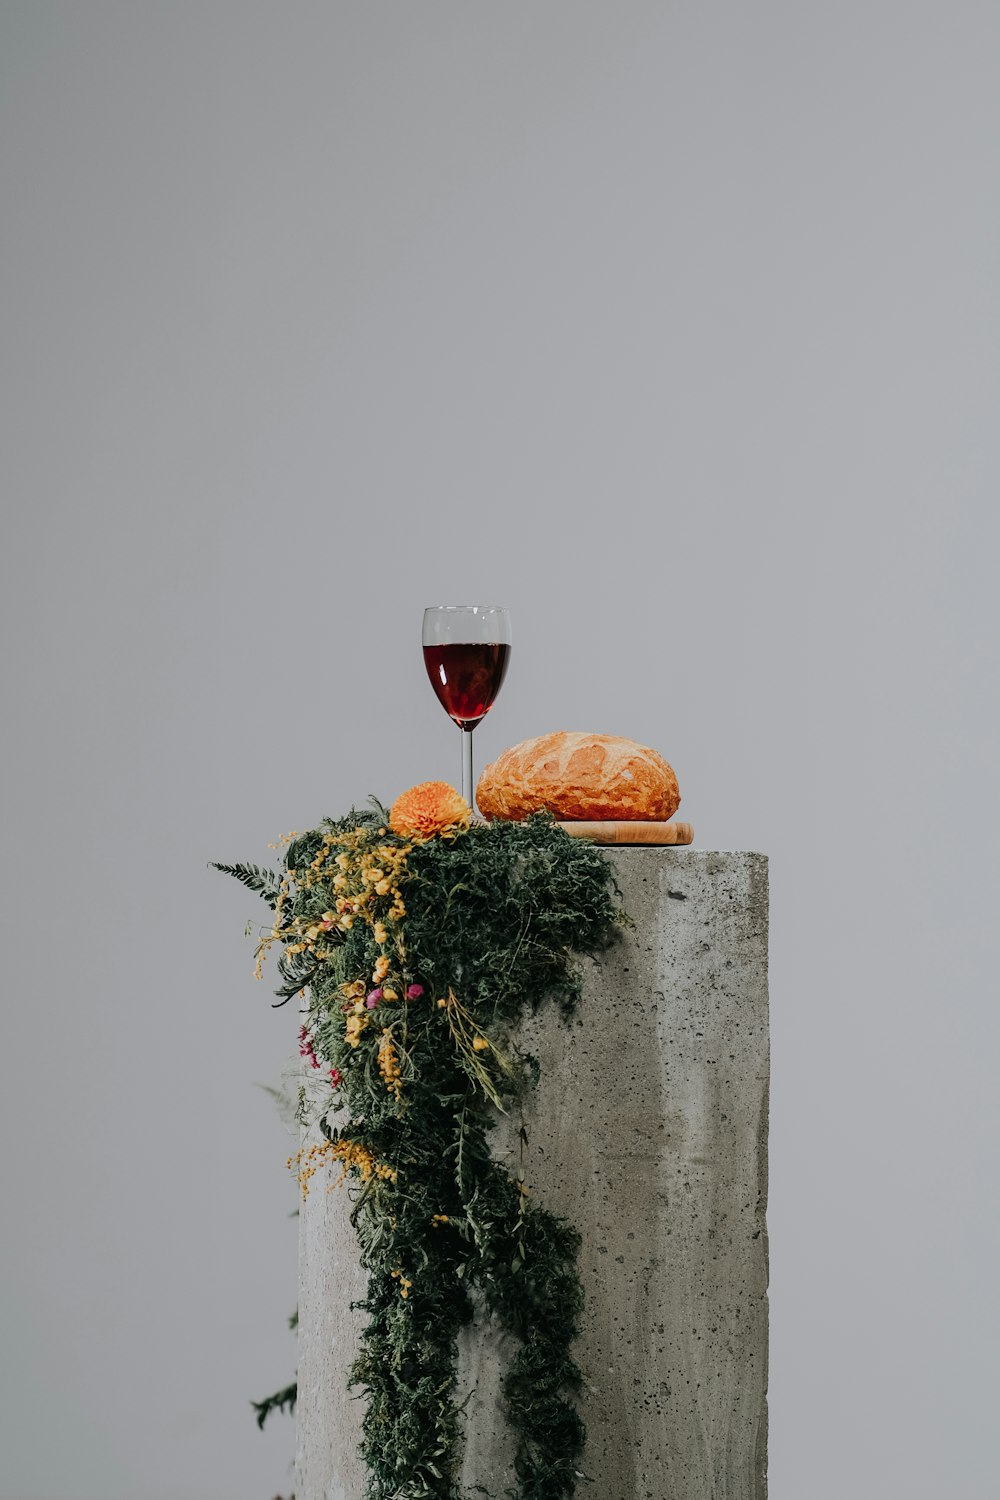 회색 콘크리트 벽에 맑은 와인 잔에 담긴 레드 와인